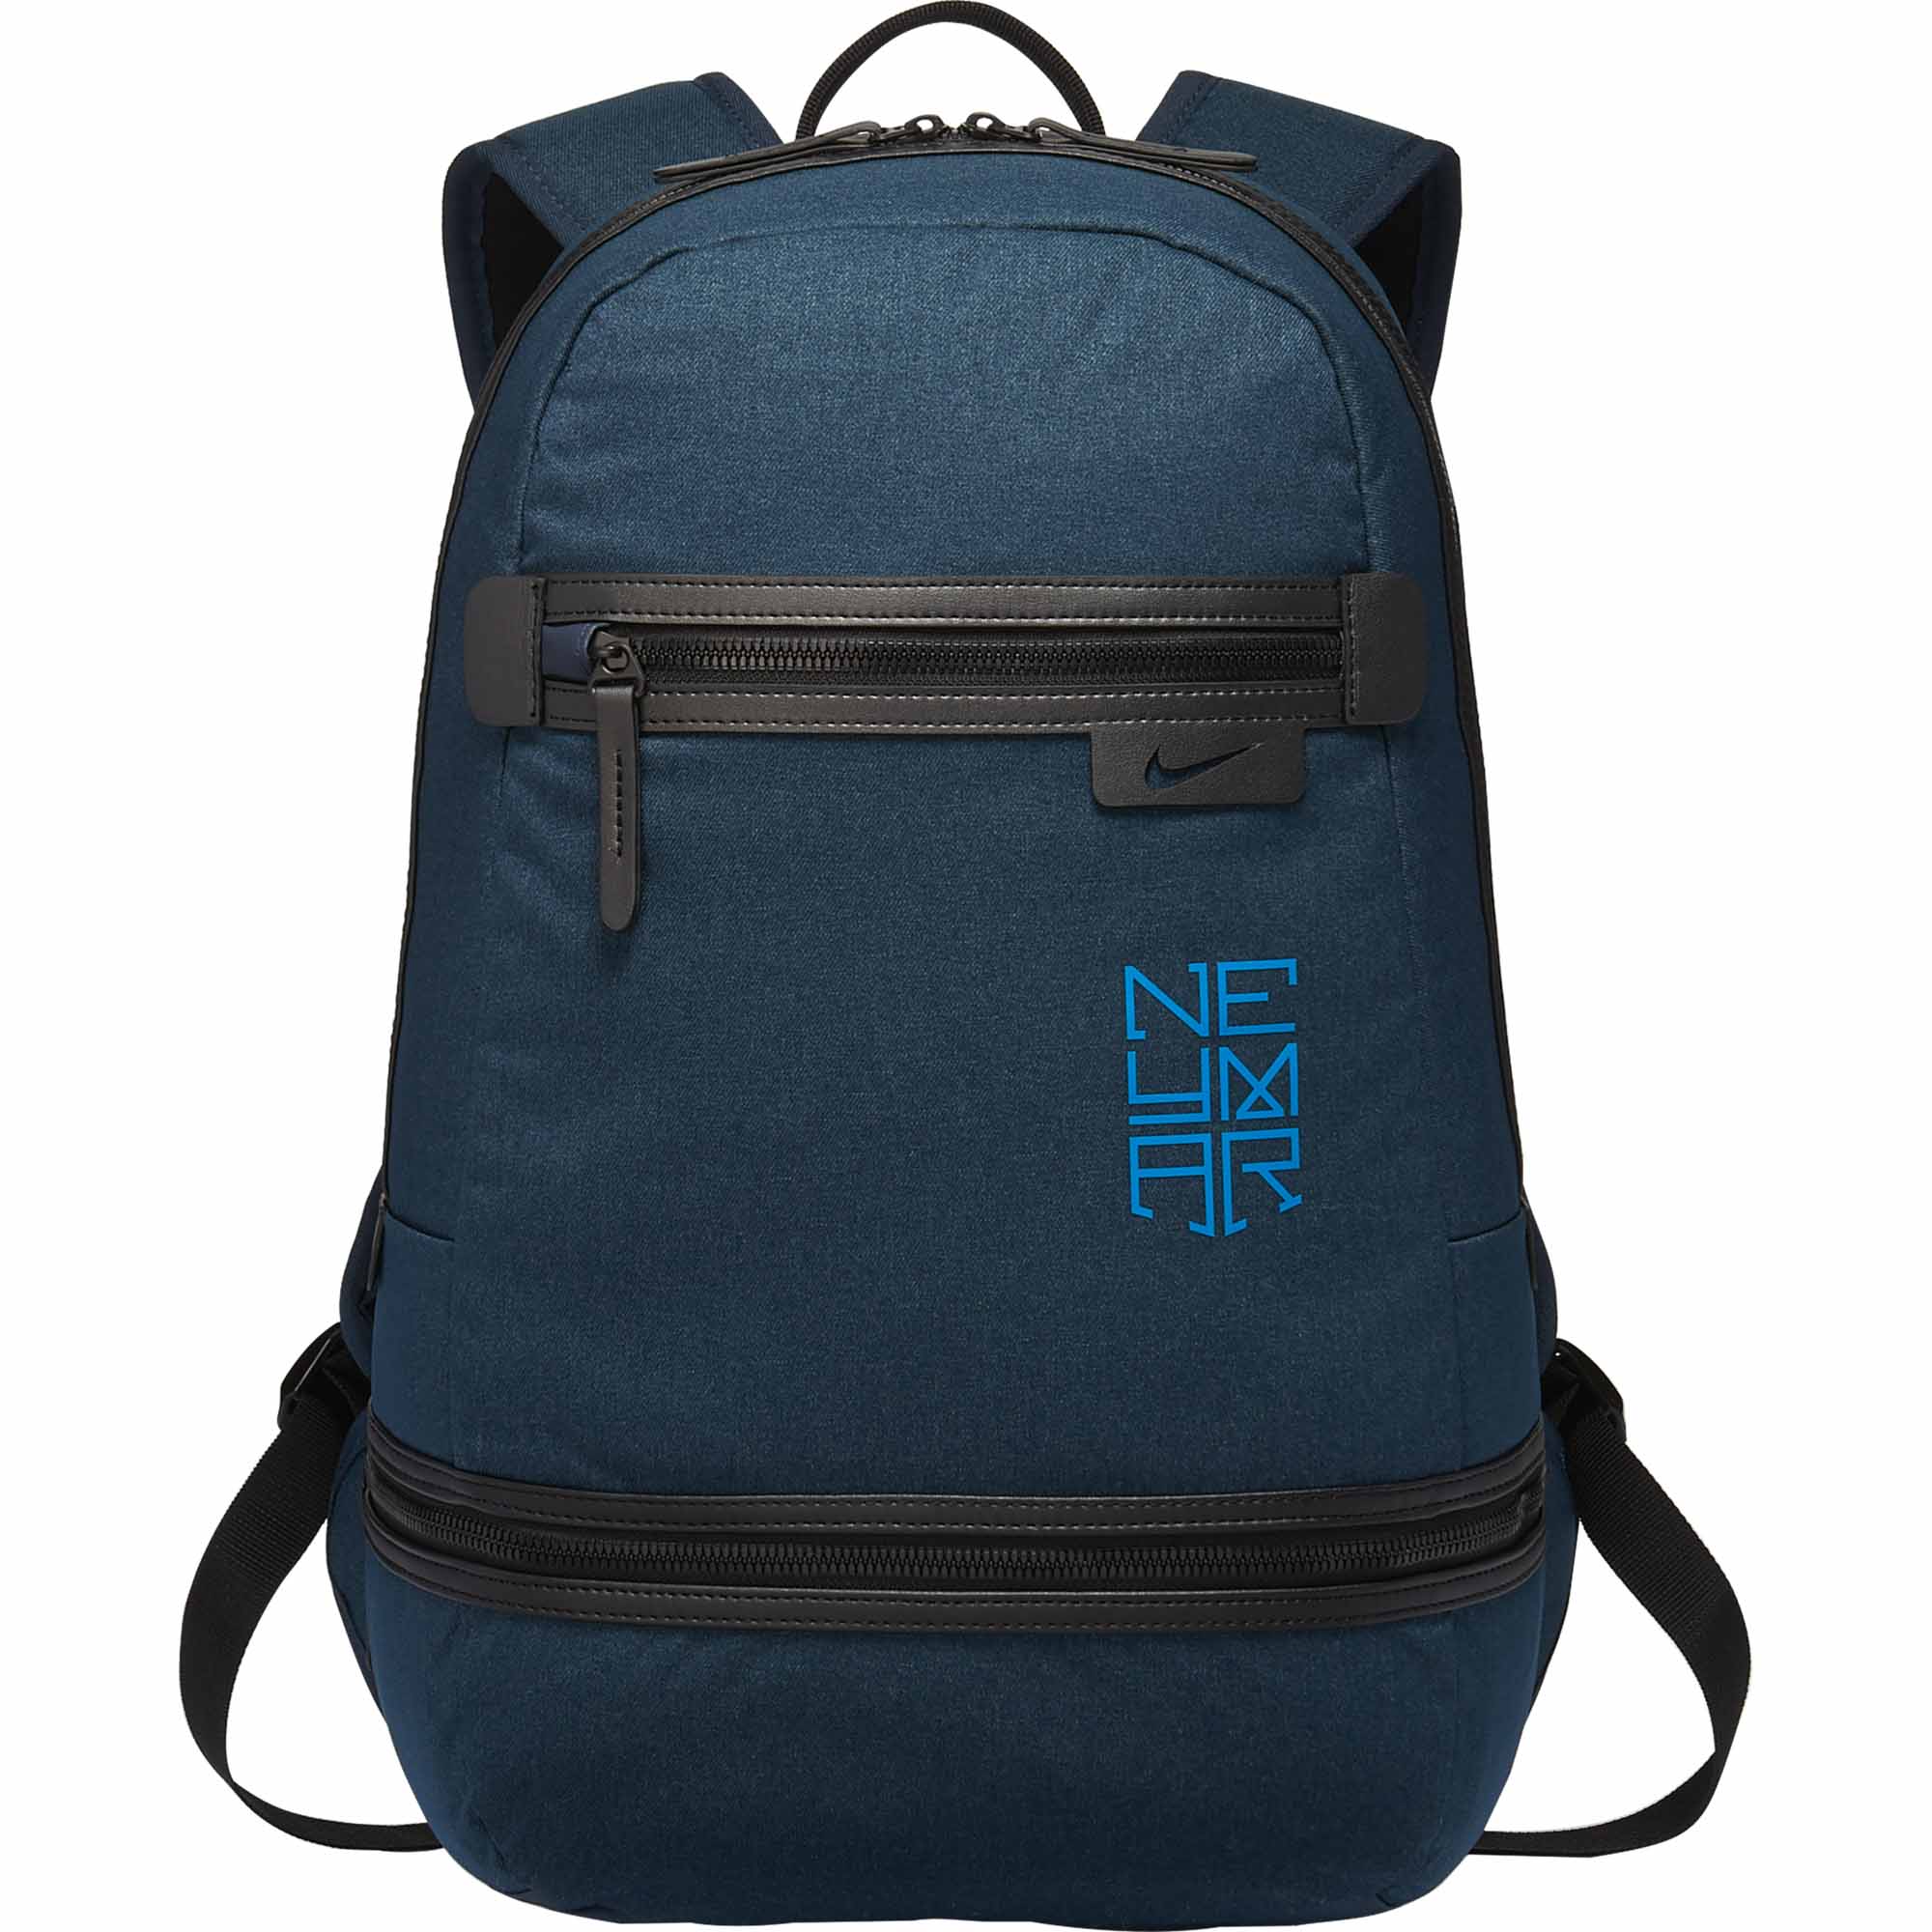 Nike Neymar Backpack - Navy Blue Soccer 